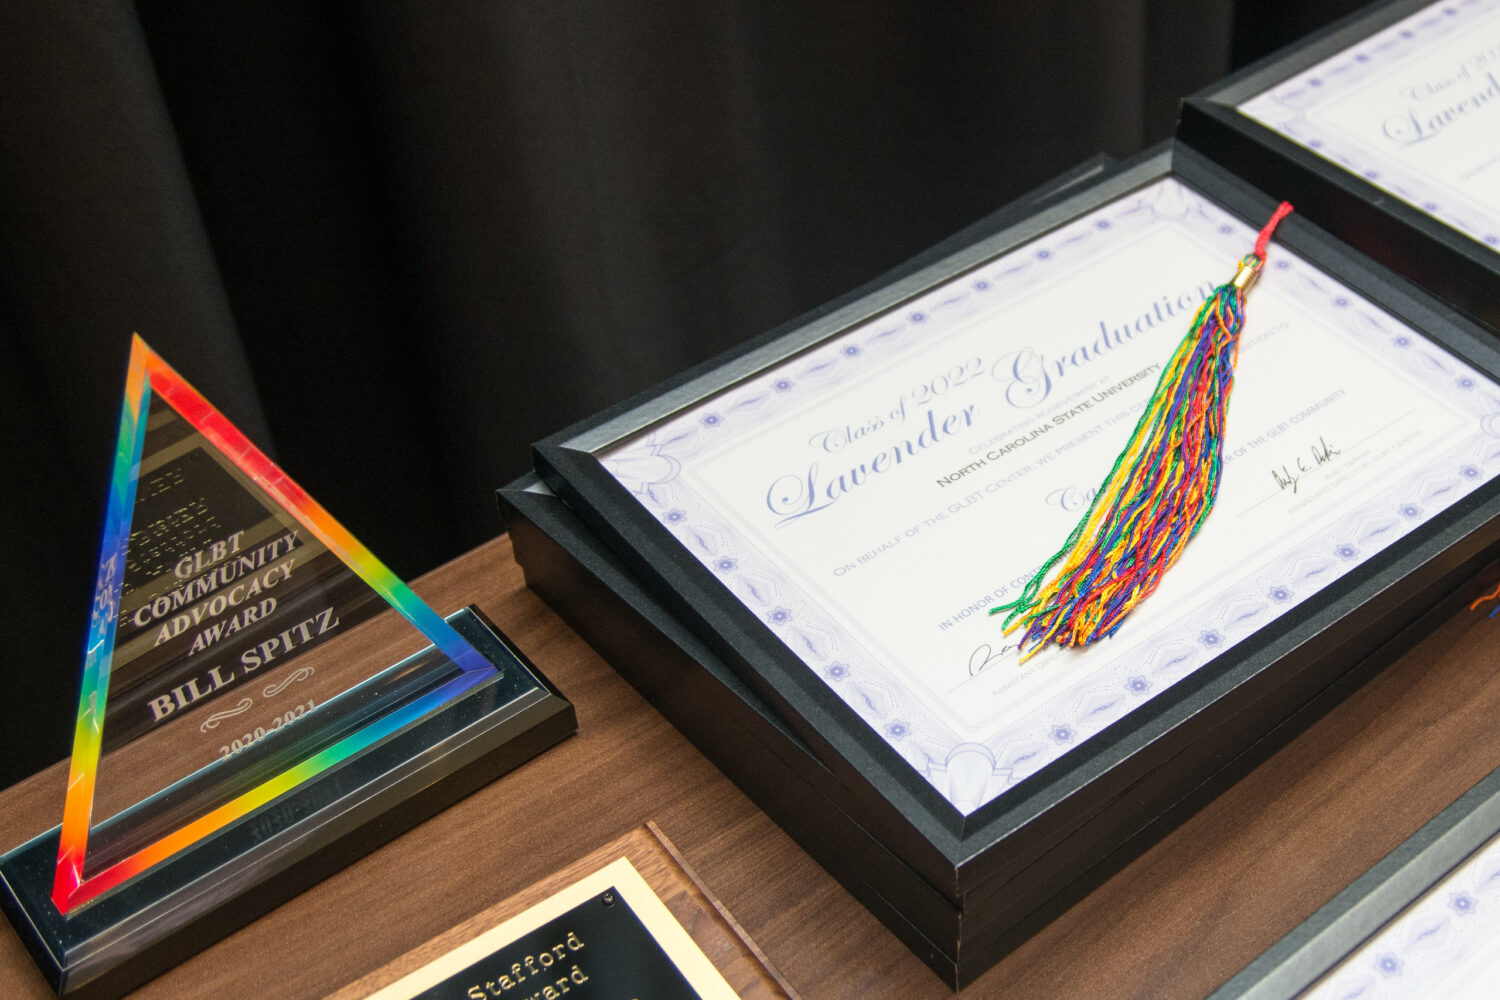 Awards and diplomas at the 2022 lavender graduation